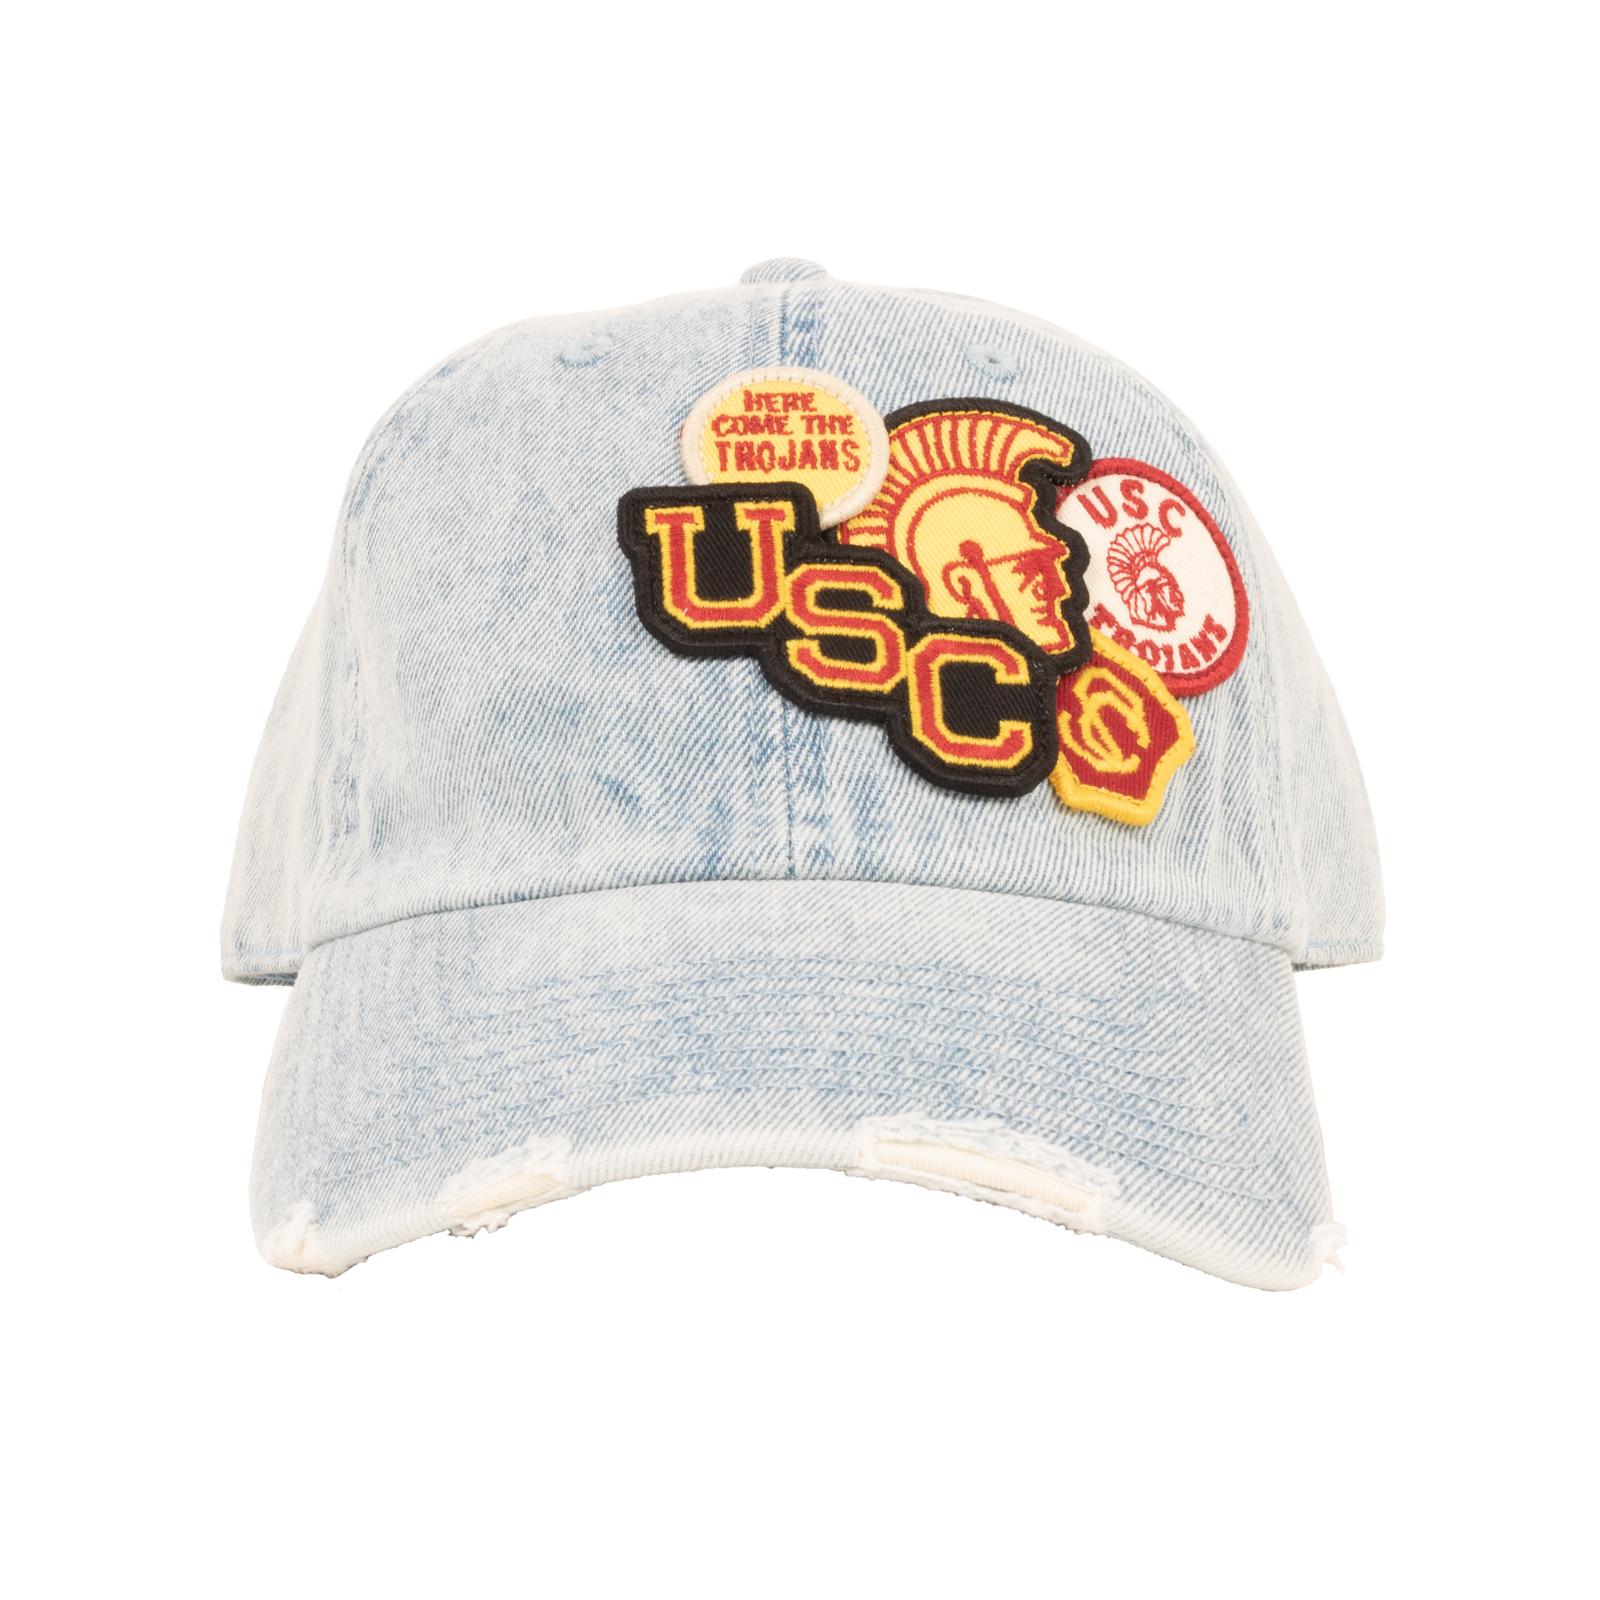 USC Trojans Cotton Denim Iconic Hat Light Blue image01